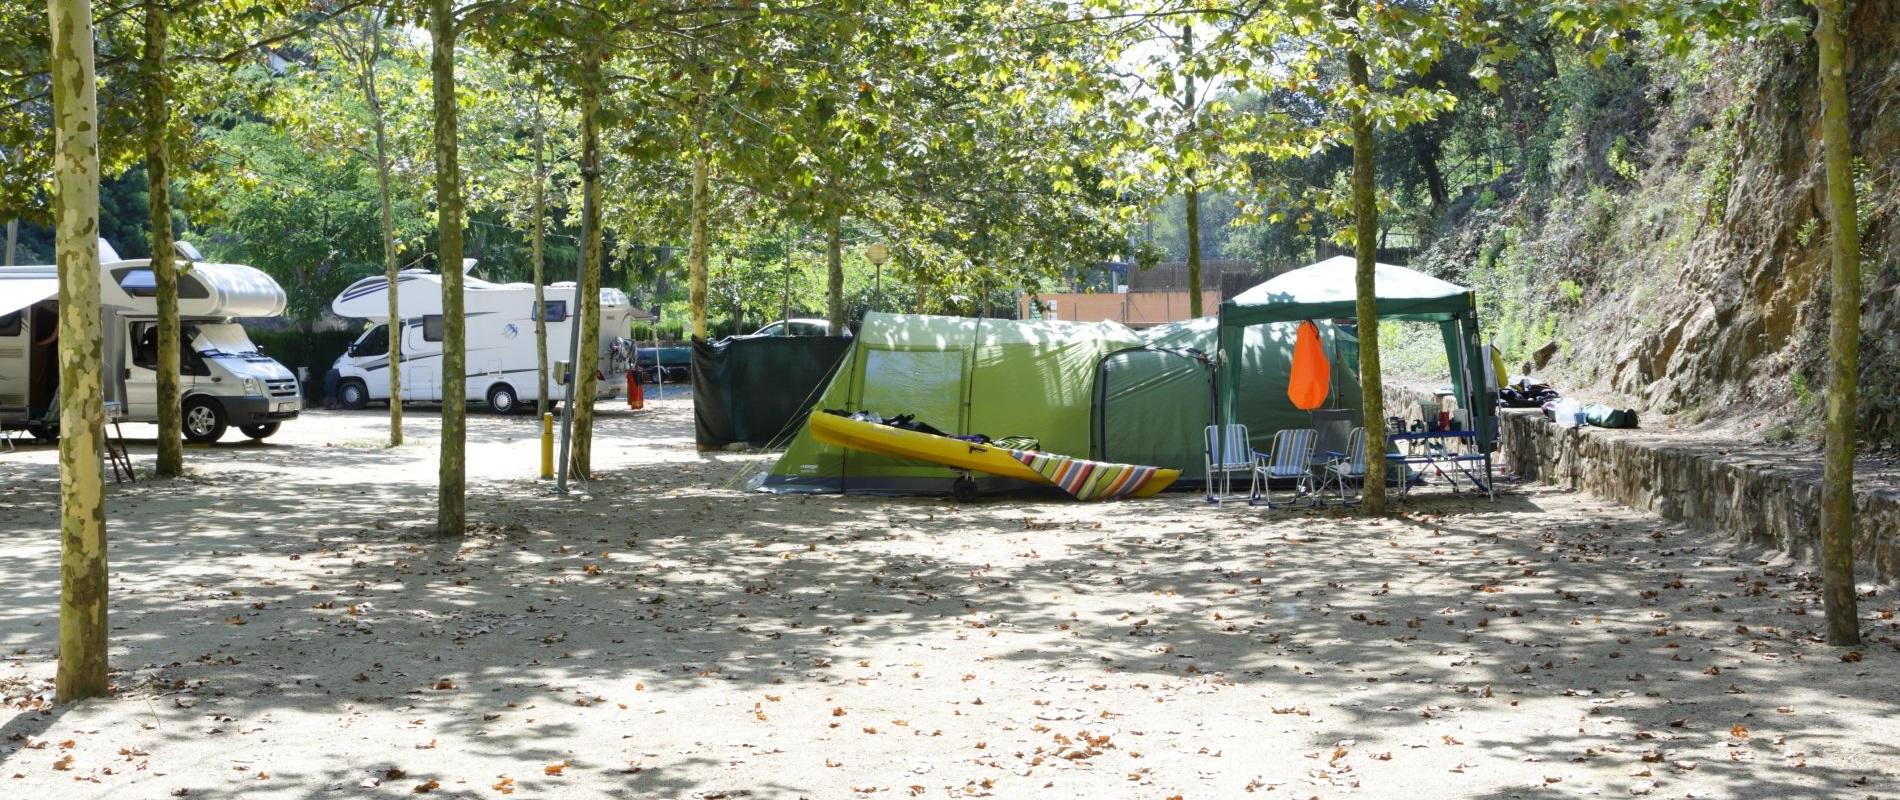 Campingplatz für Wohnmobile und große Wohnwagen